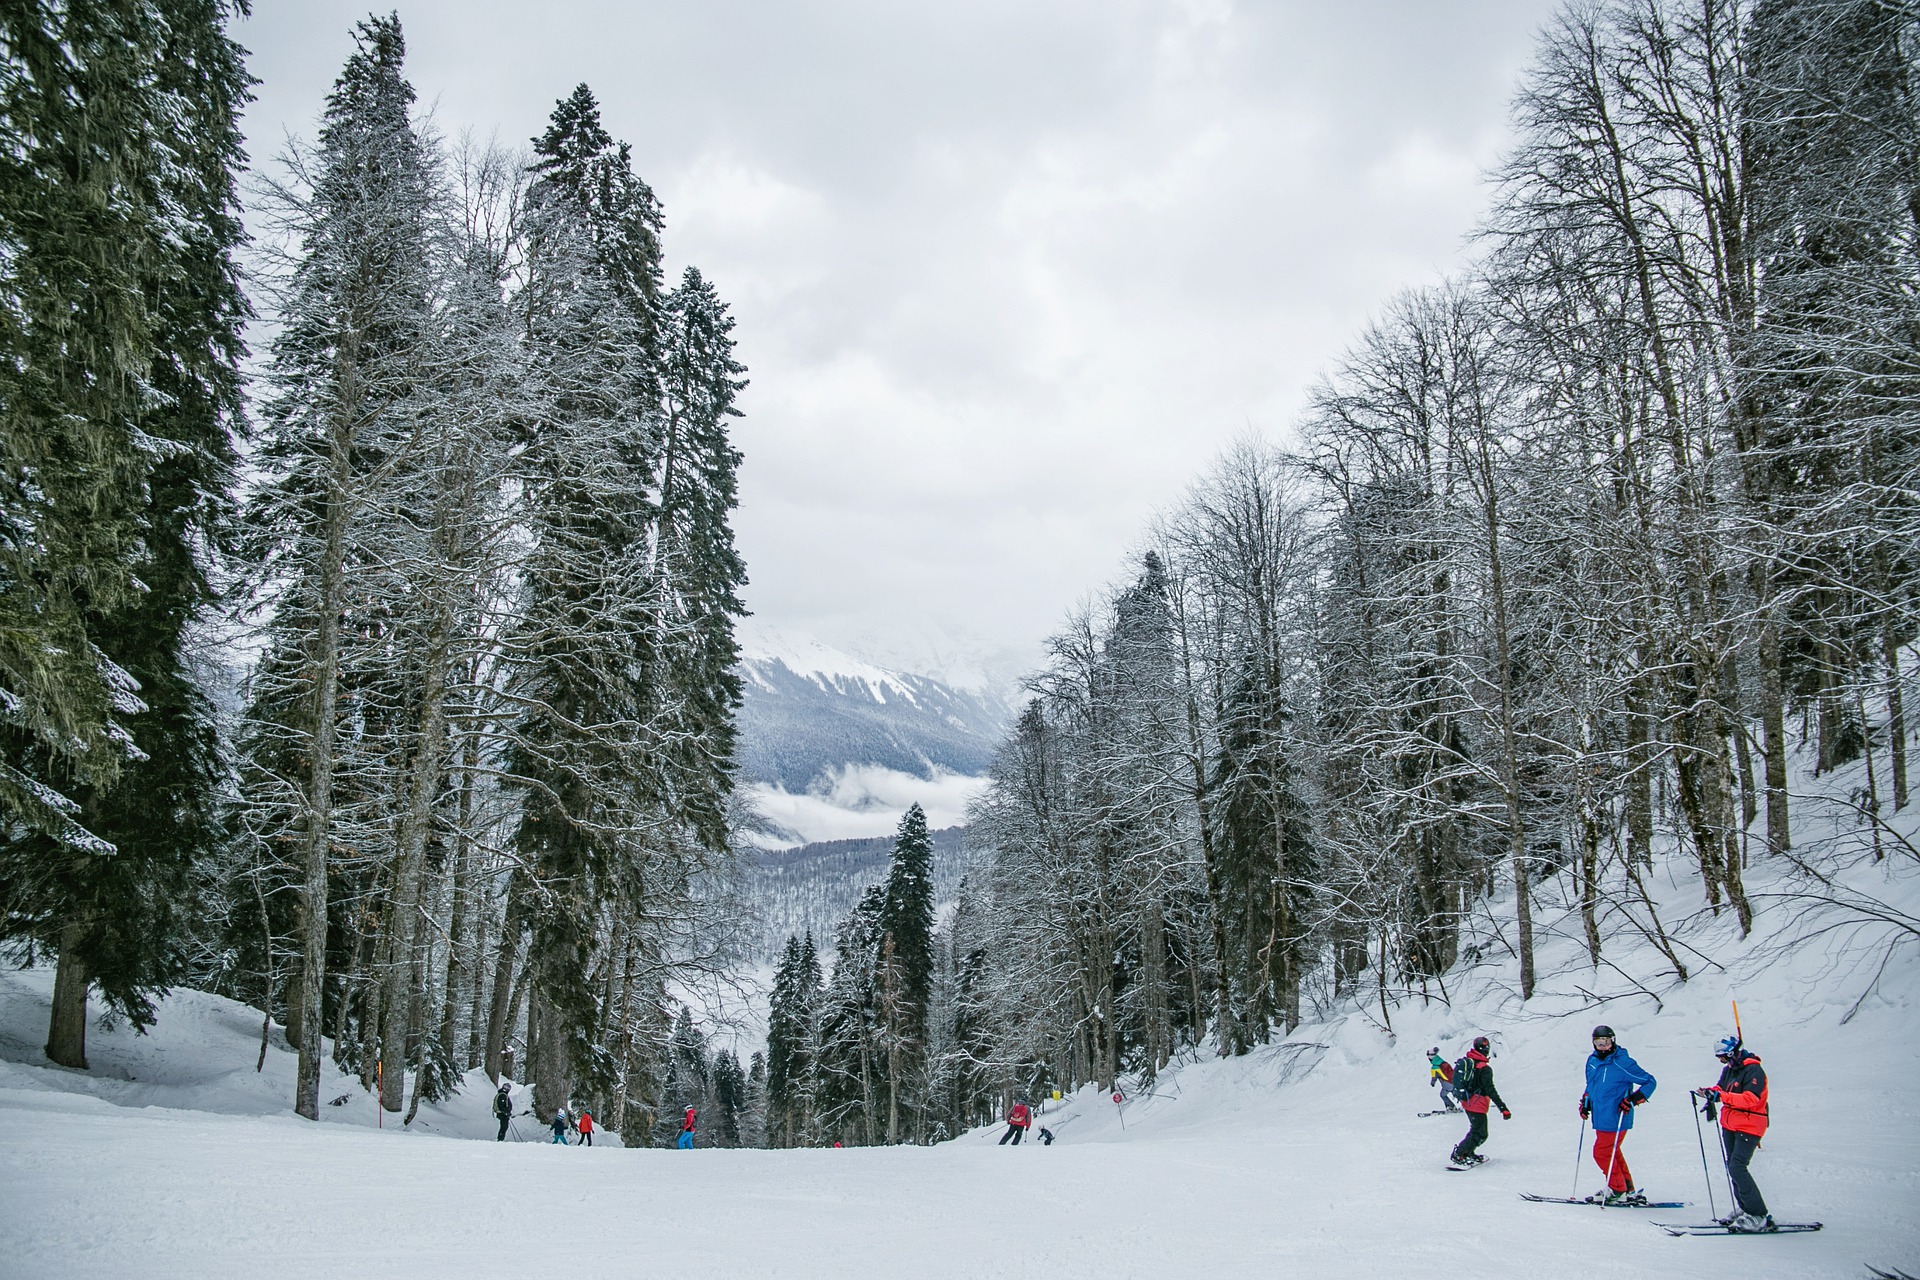 Ski-hill-in-canada-winter